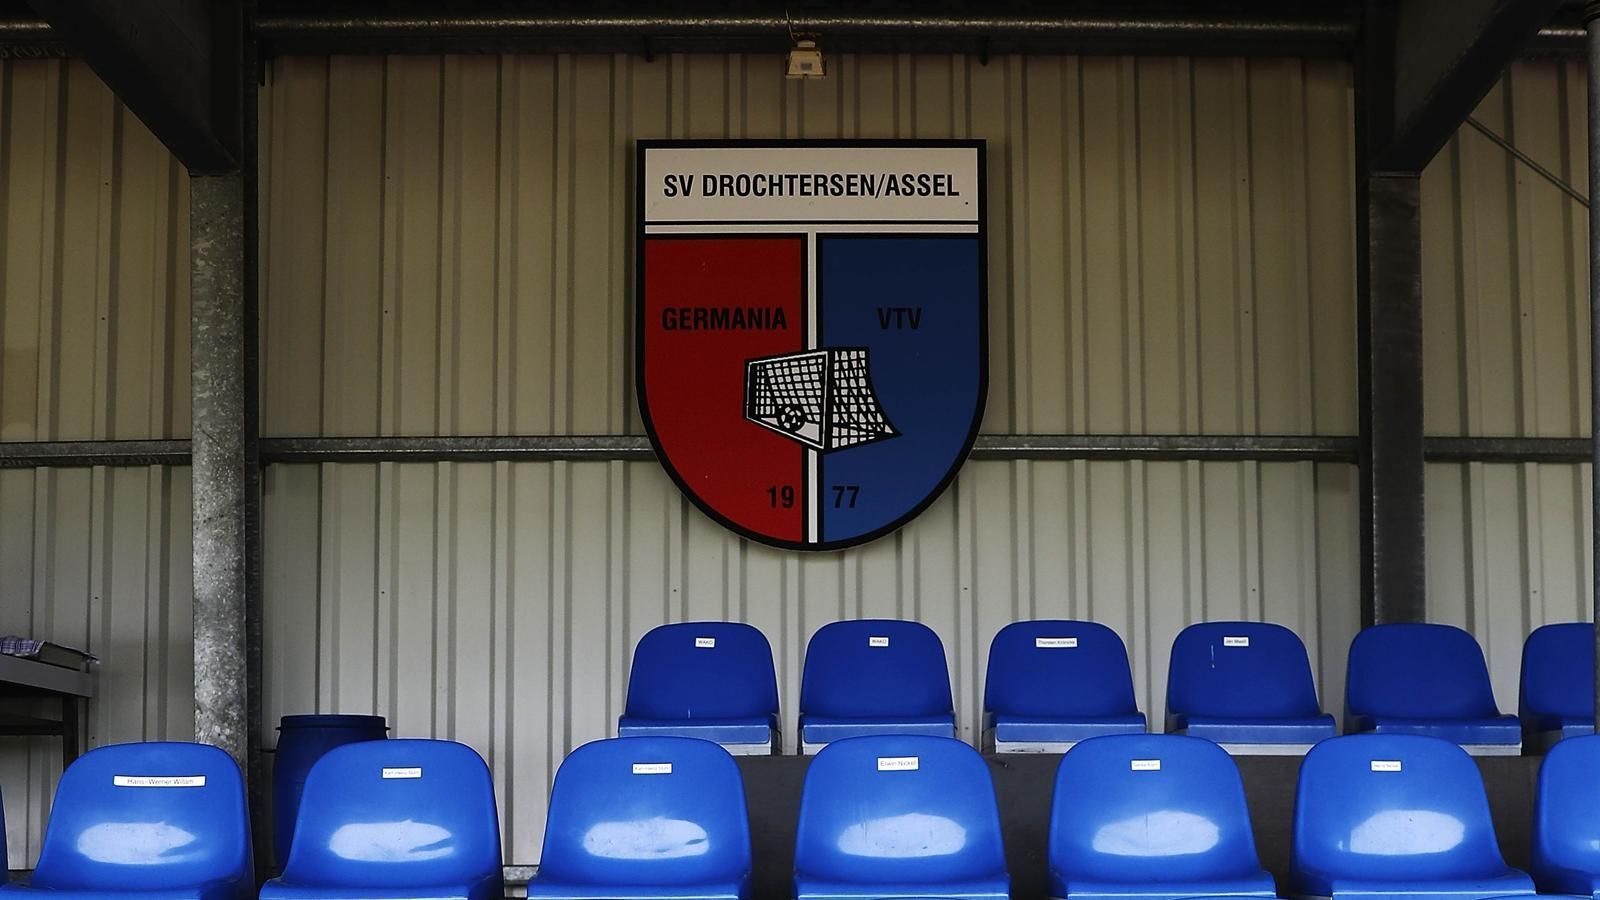 
                <strong>SV Drochtersen/Assel</strong><br>
                Die SV Drochtersen/Assel e. V. ist ein Fußballverein aus der niedersächsischen Gemeinde Drochtersen im Landkreis Stade. Drochtersen zählt insgesamt rund 11.500 Einwohner. 1977 wurde die SV Drochtersen/Assel aus dem Zusammenschluss der beiden Vereine TVG Drochtersen und VTV Assel gegründet.
              